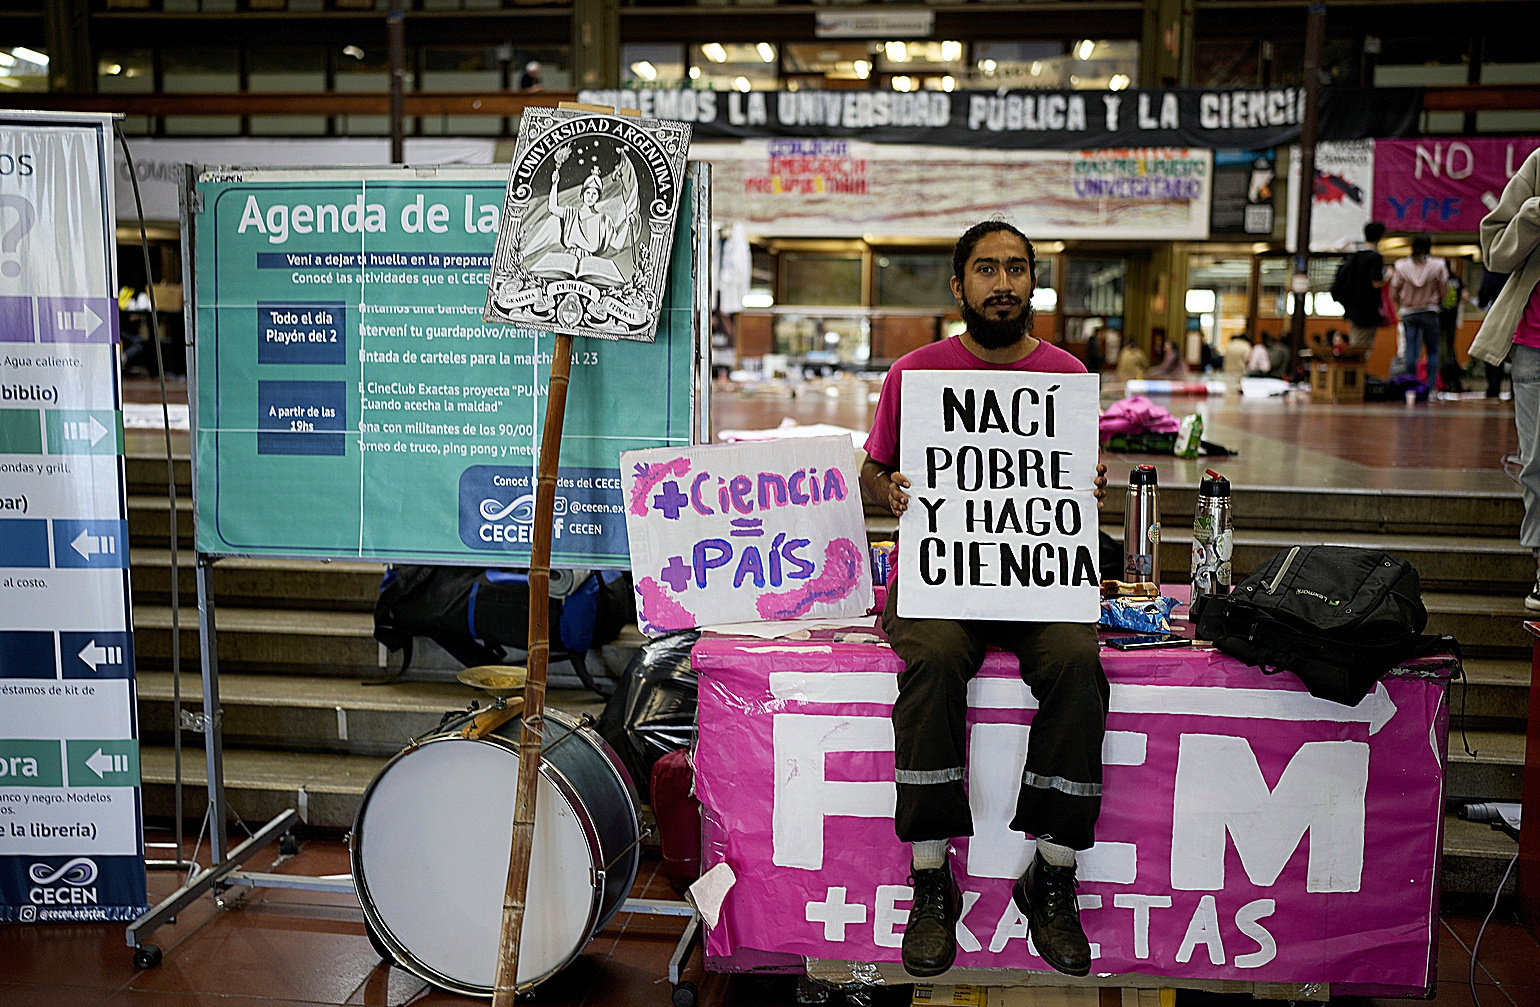 El bilogo Bahiano Ayala sostiene un cartel en Buenos Aires en el que dice "Nac pobre pero hago ciencia".